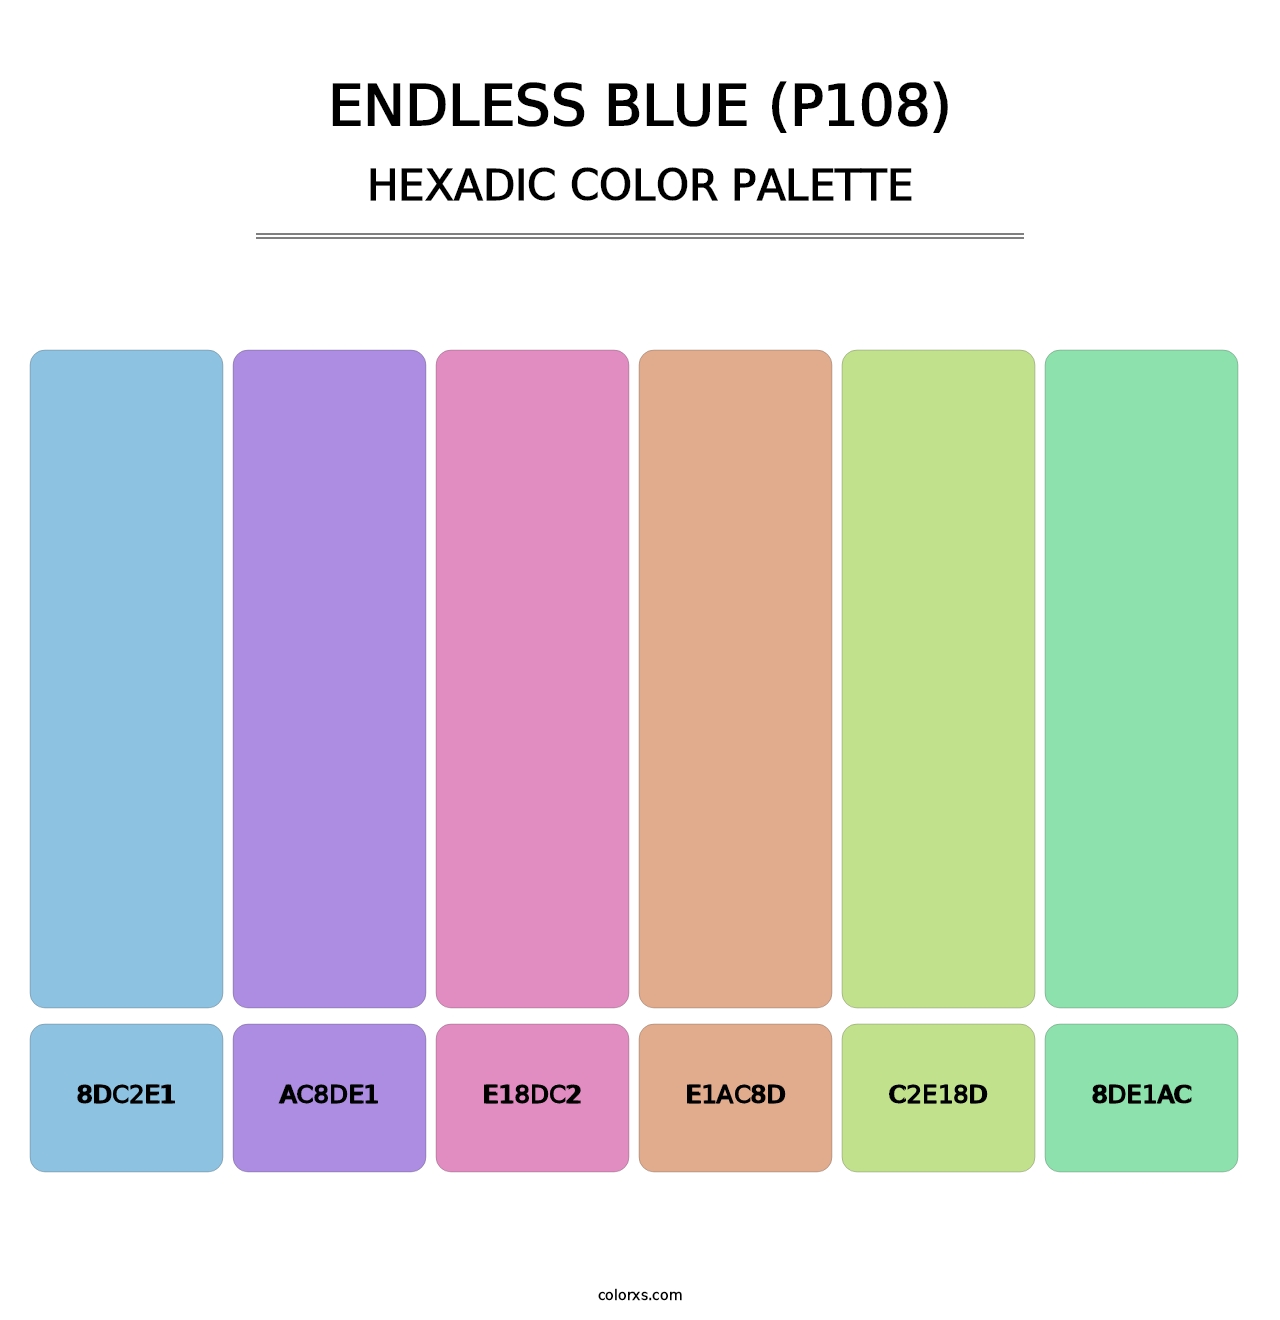 Endless Blue (P108) - Hexadic Color Palette